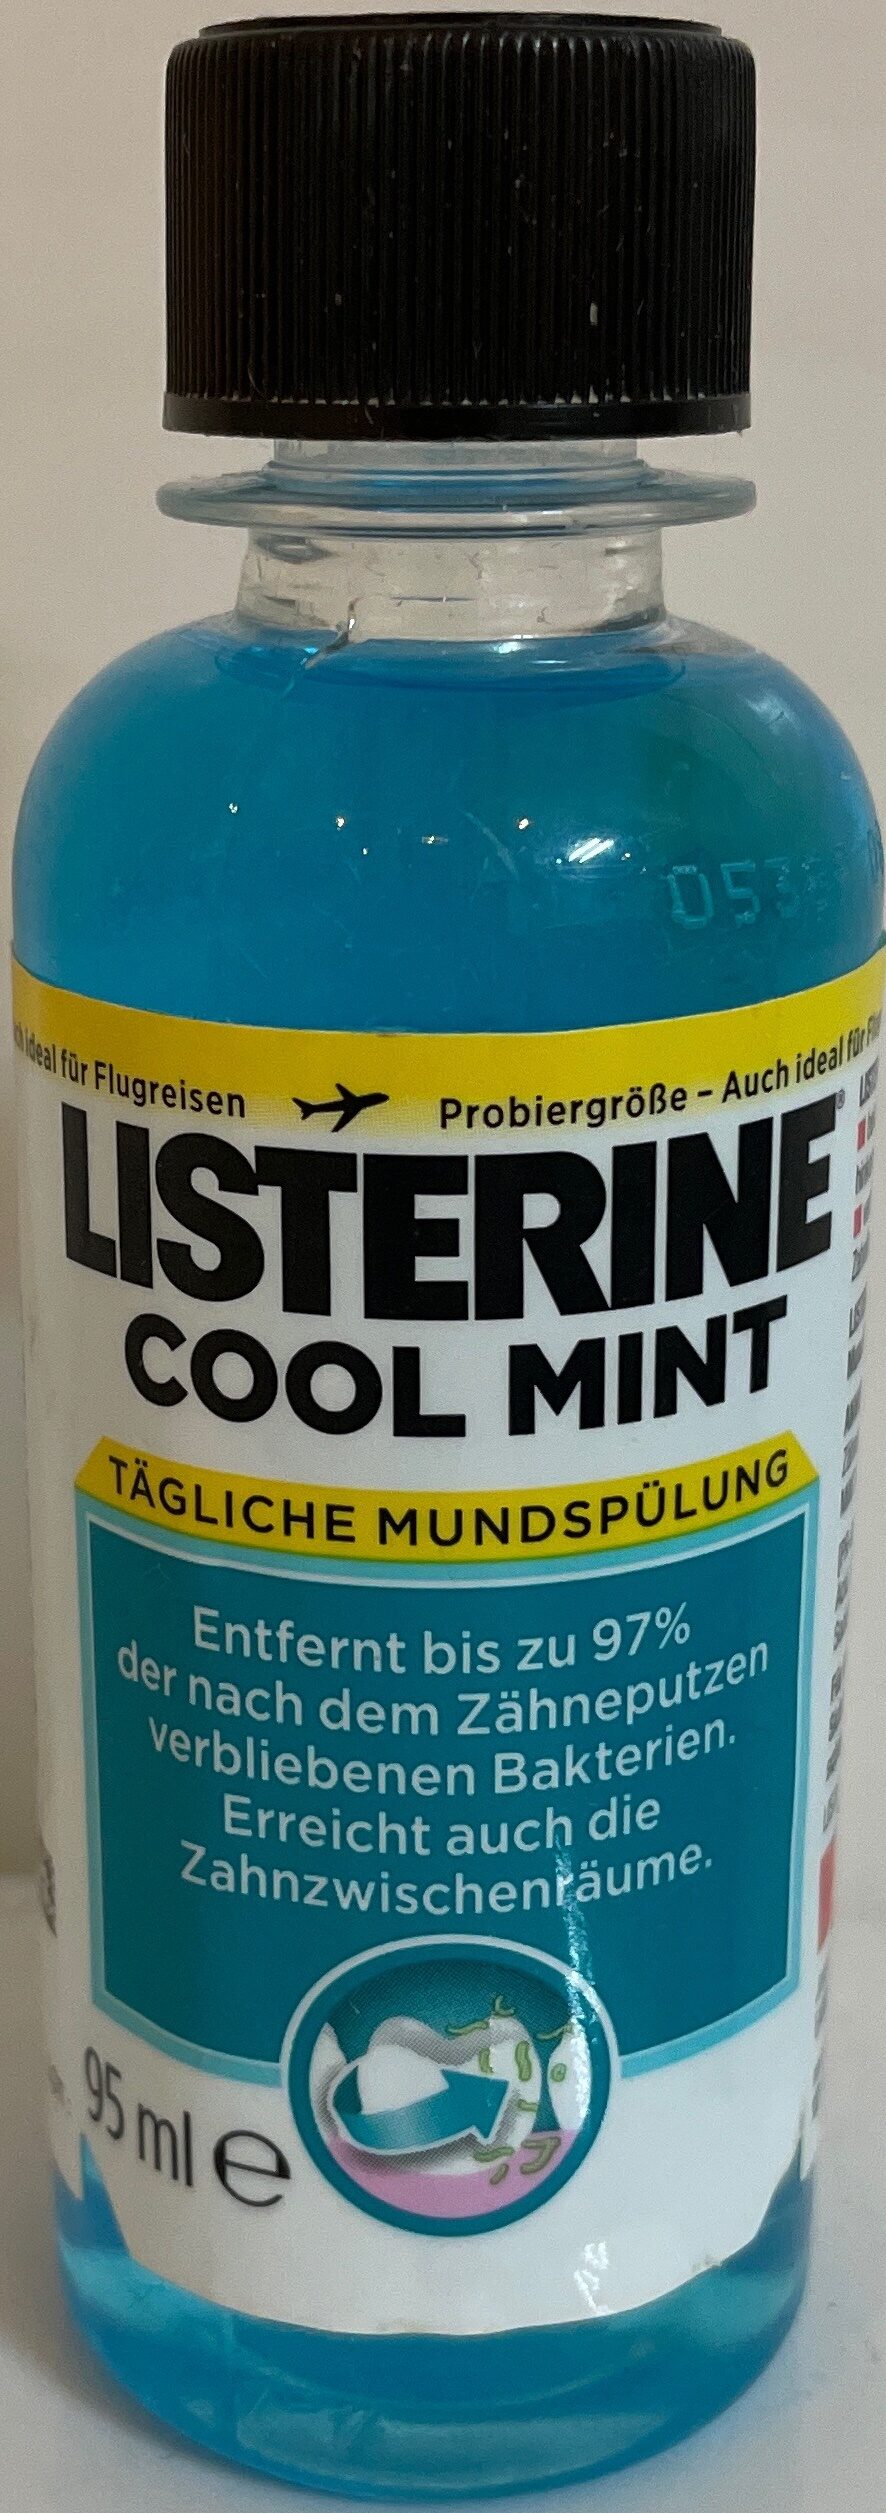 Listerine Cool Mint - Product - de